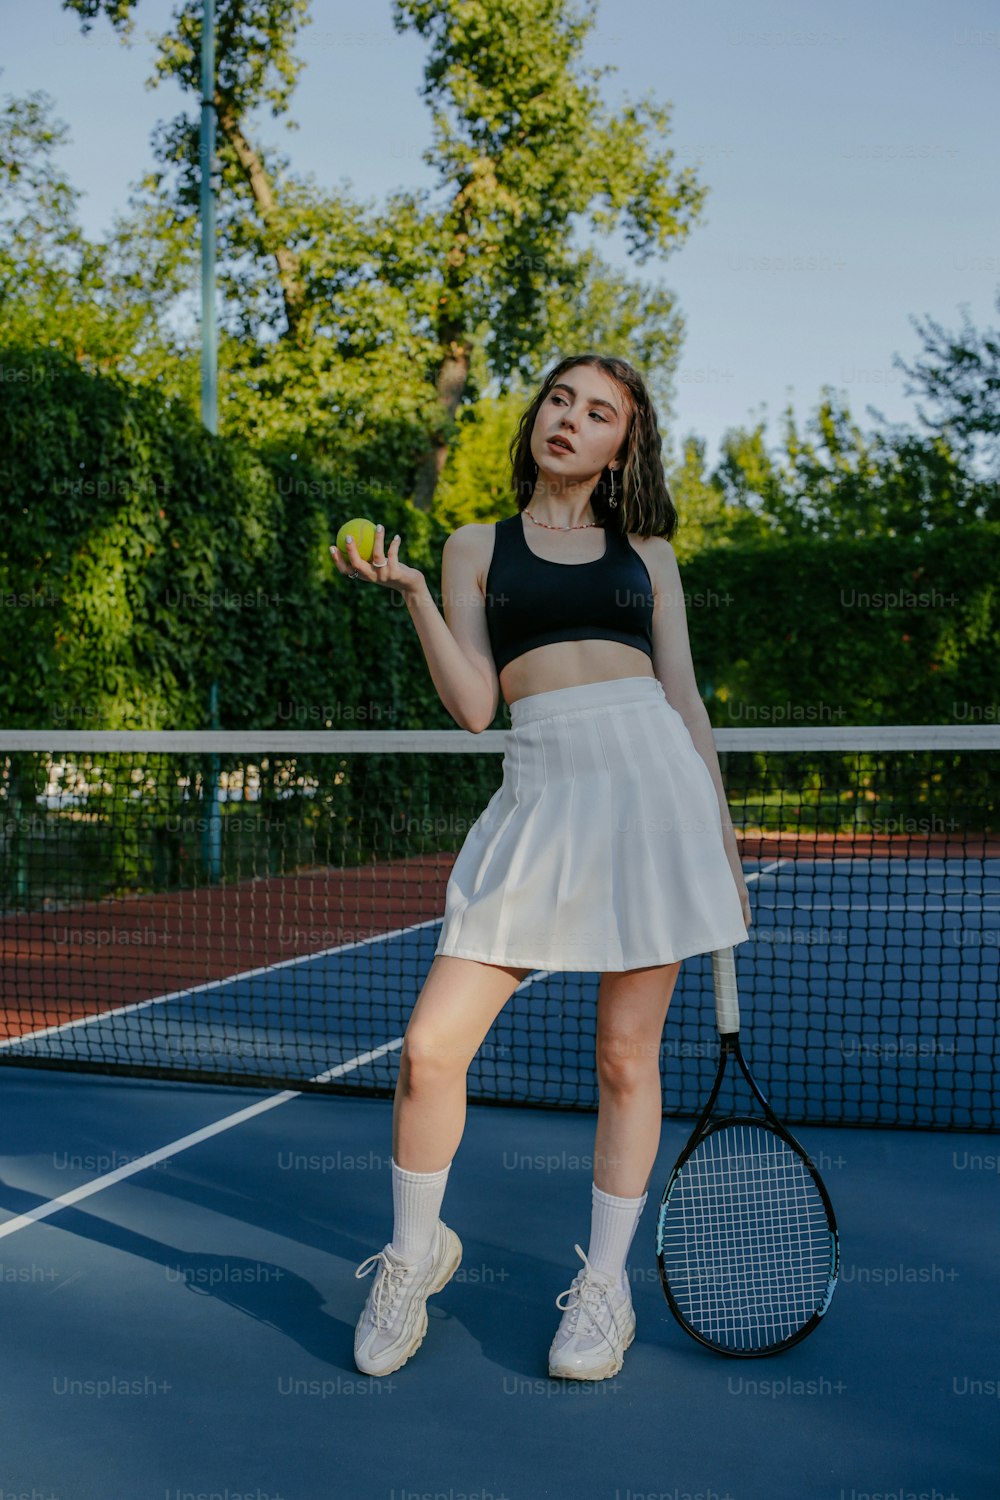 Una mujer sosteniendo una raqueta de tenis en una cancha de tenis